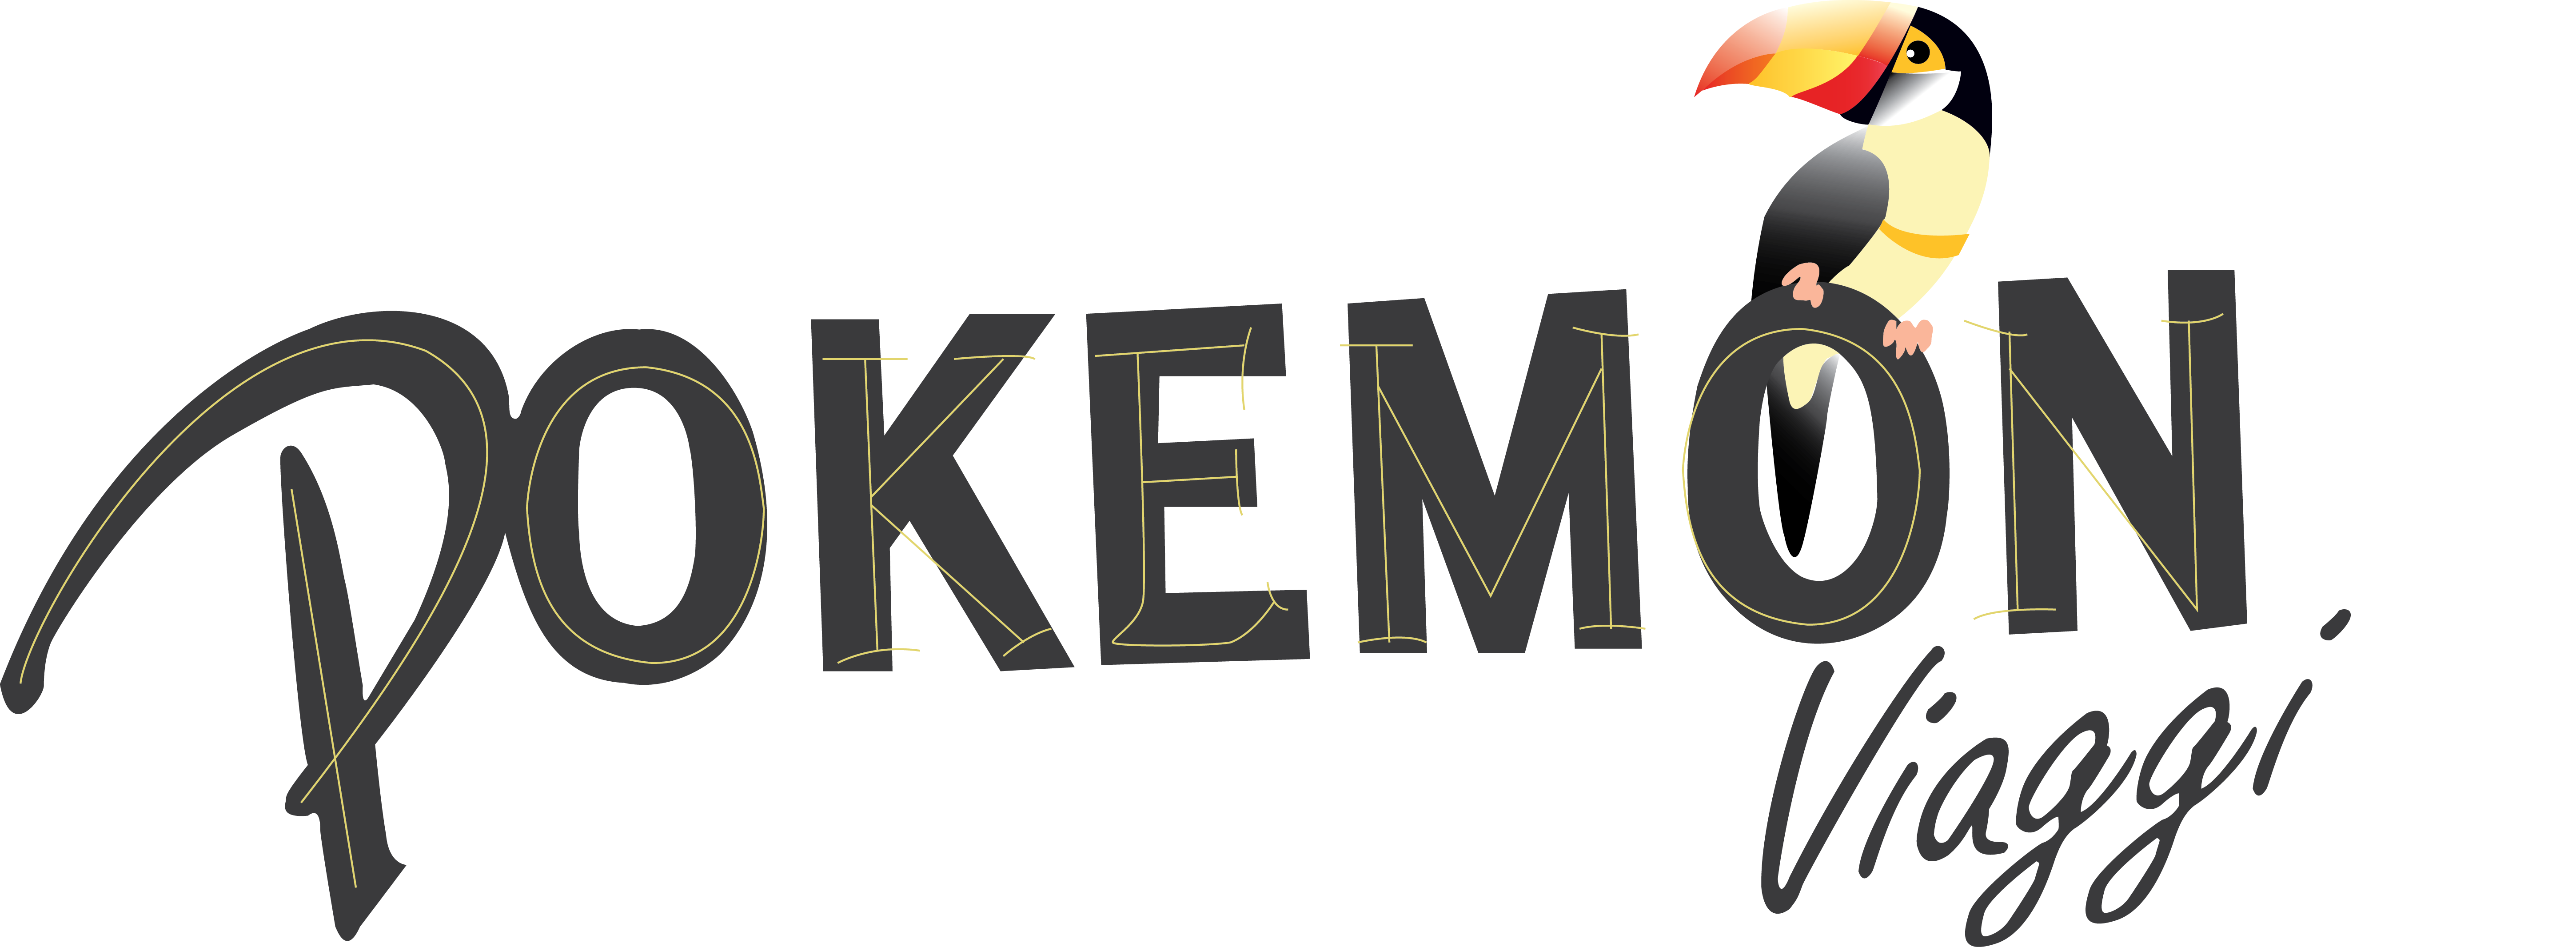 Pokemon Viaggi